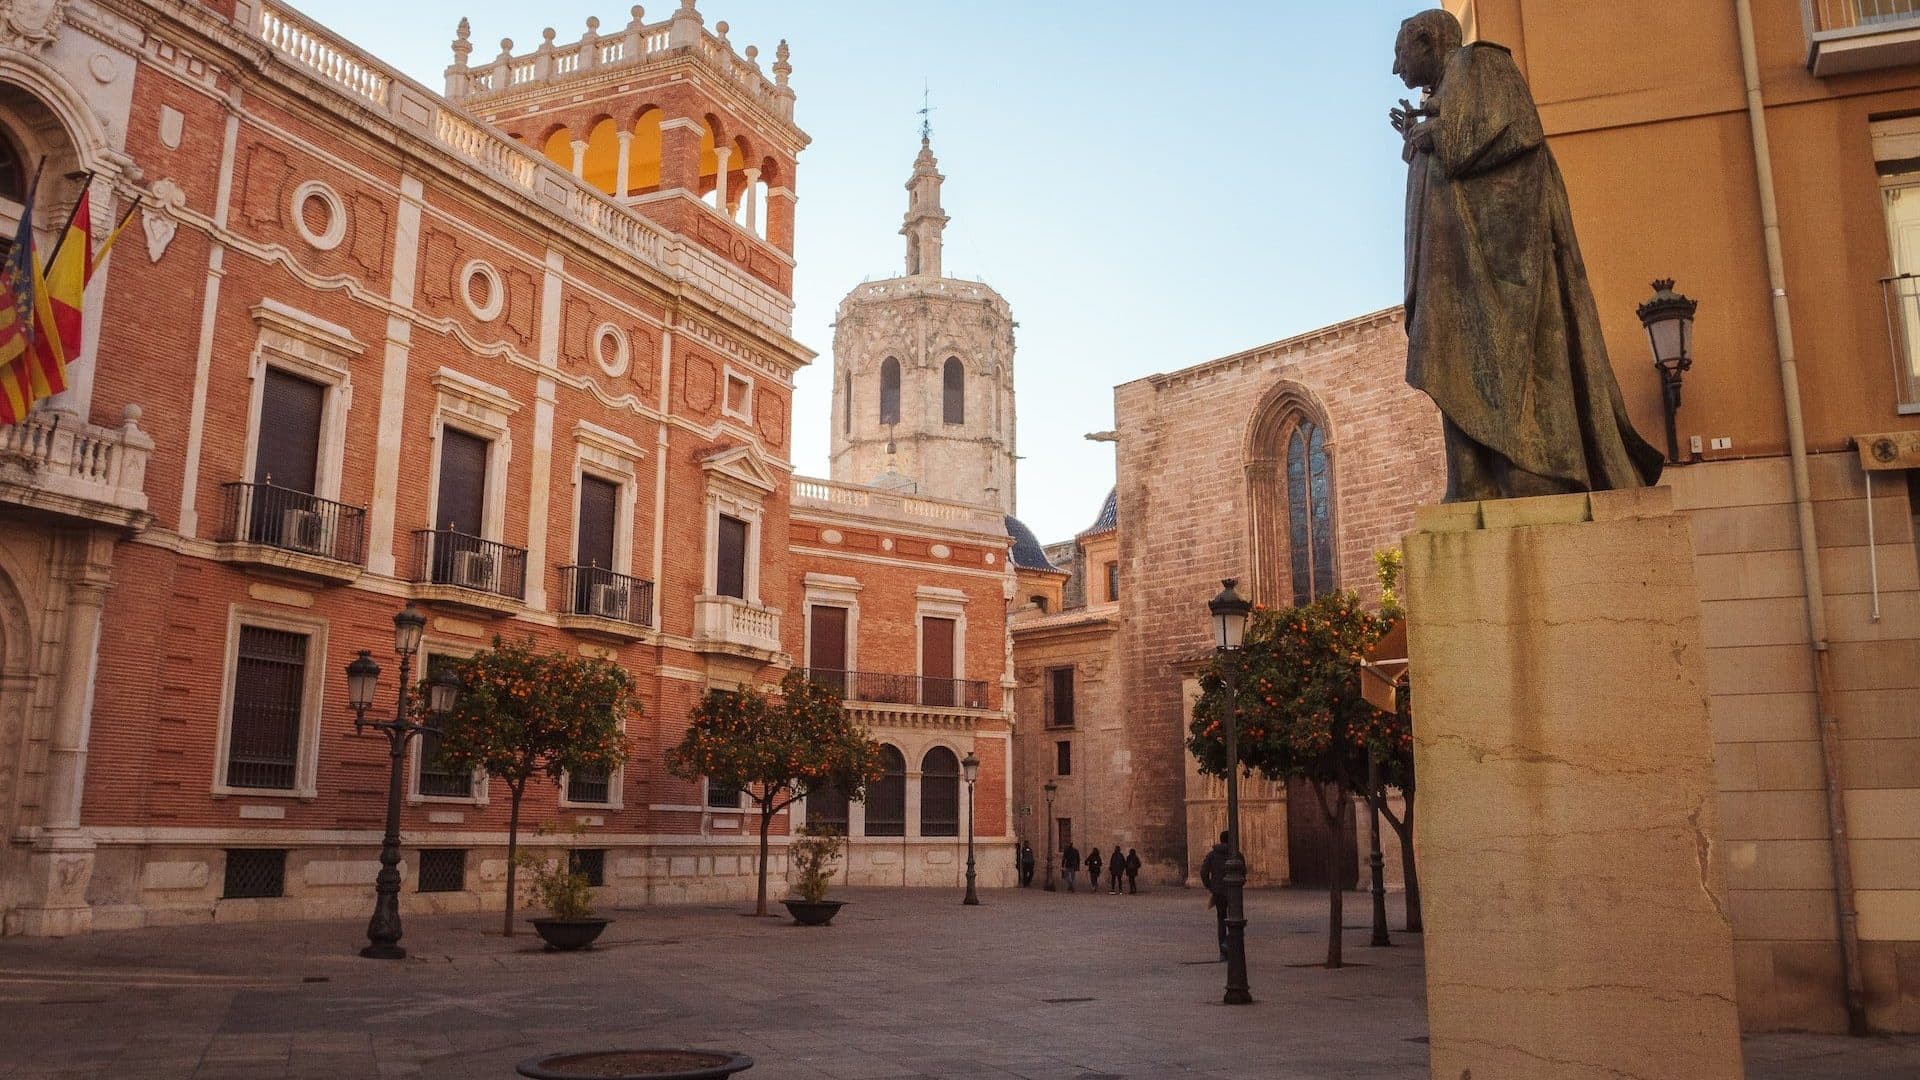 Ciutat Vella es la mejor zona donde alojarse en Valencia para descubrir su historia. Nuestro hotel favorito aquí es MYR Puerta Serranos